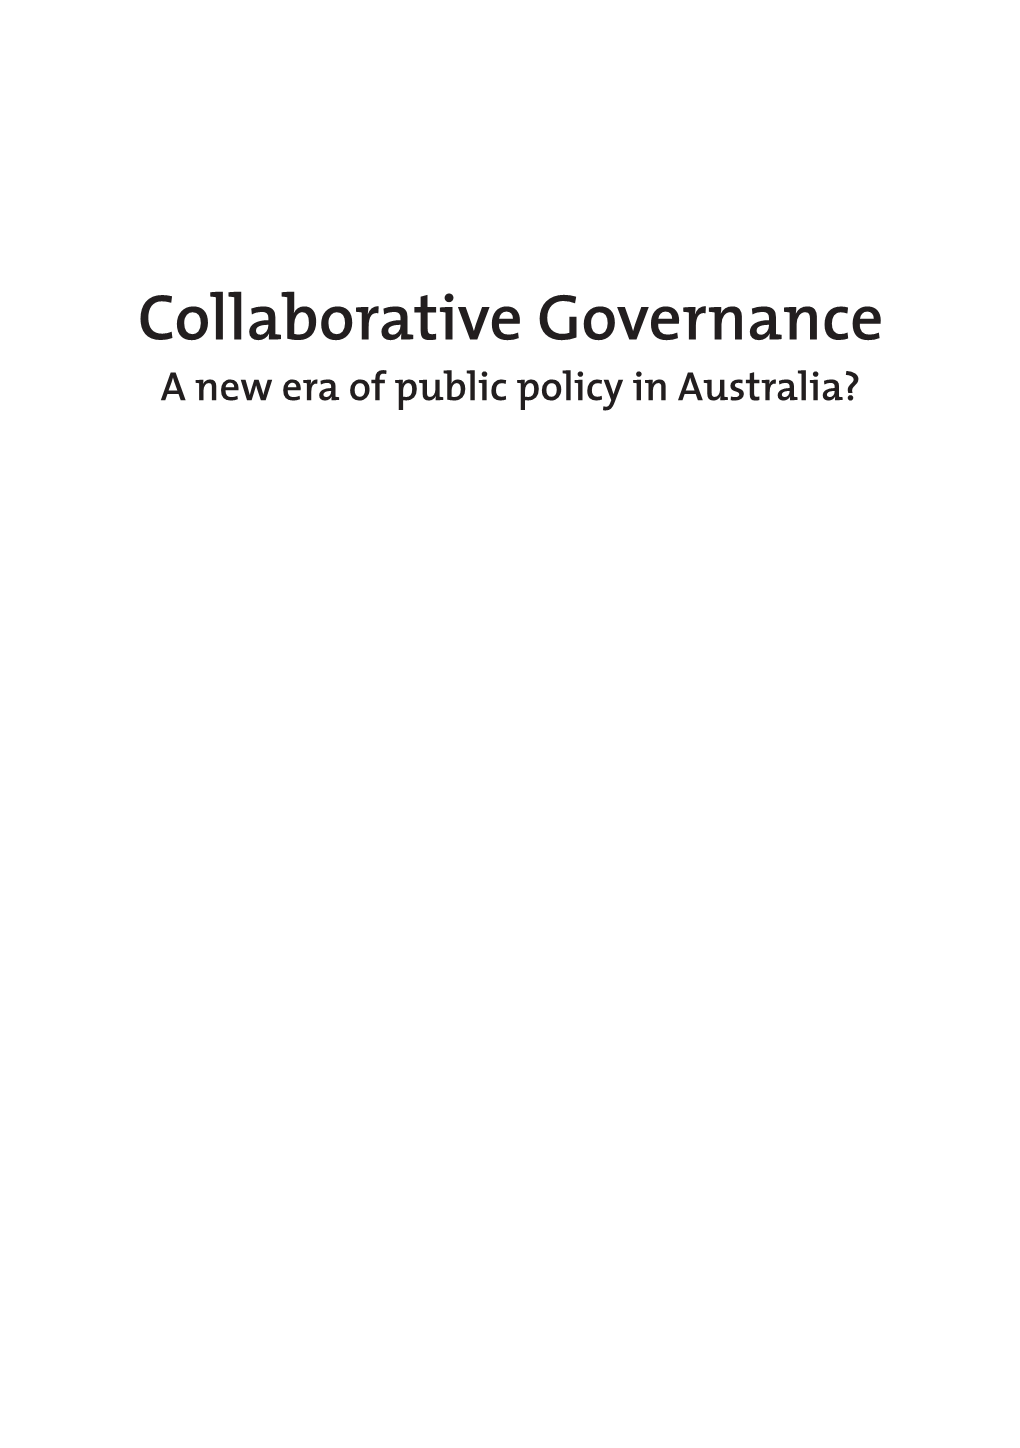 Collaborative Governance a New Era of Public Policy in Australia?